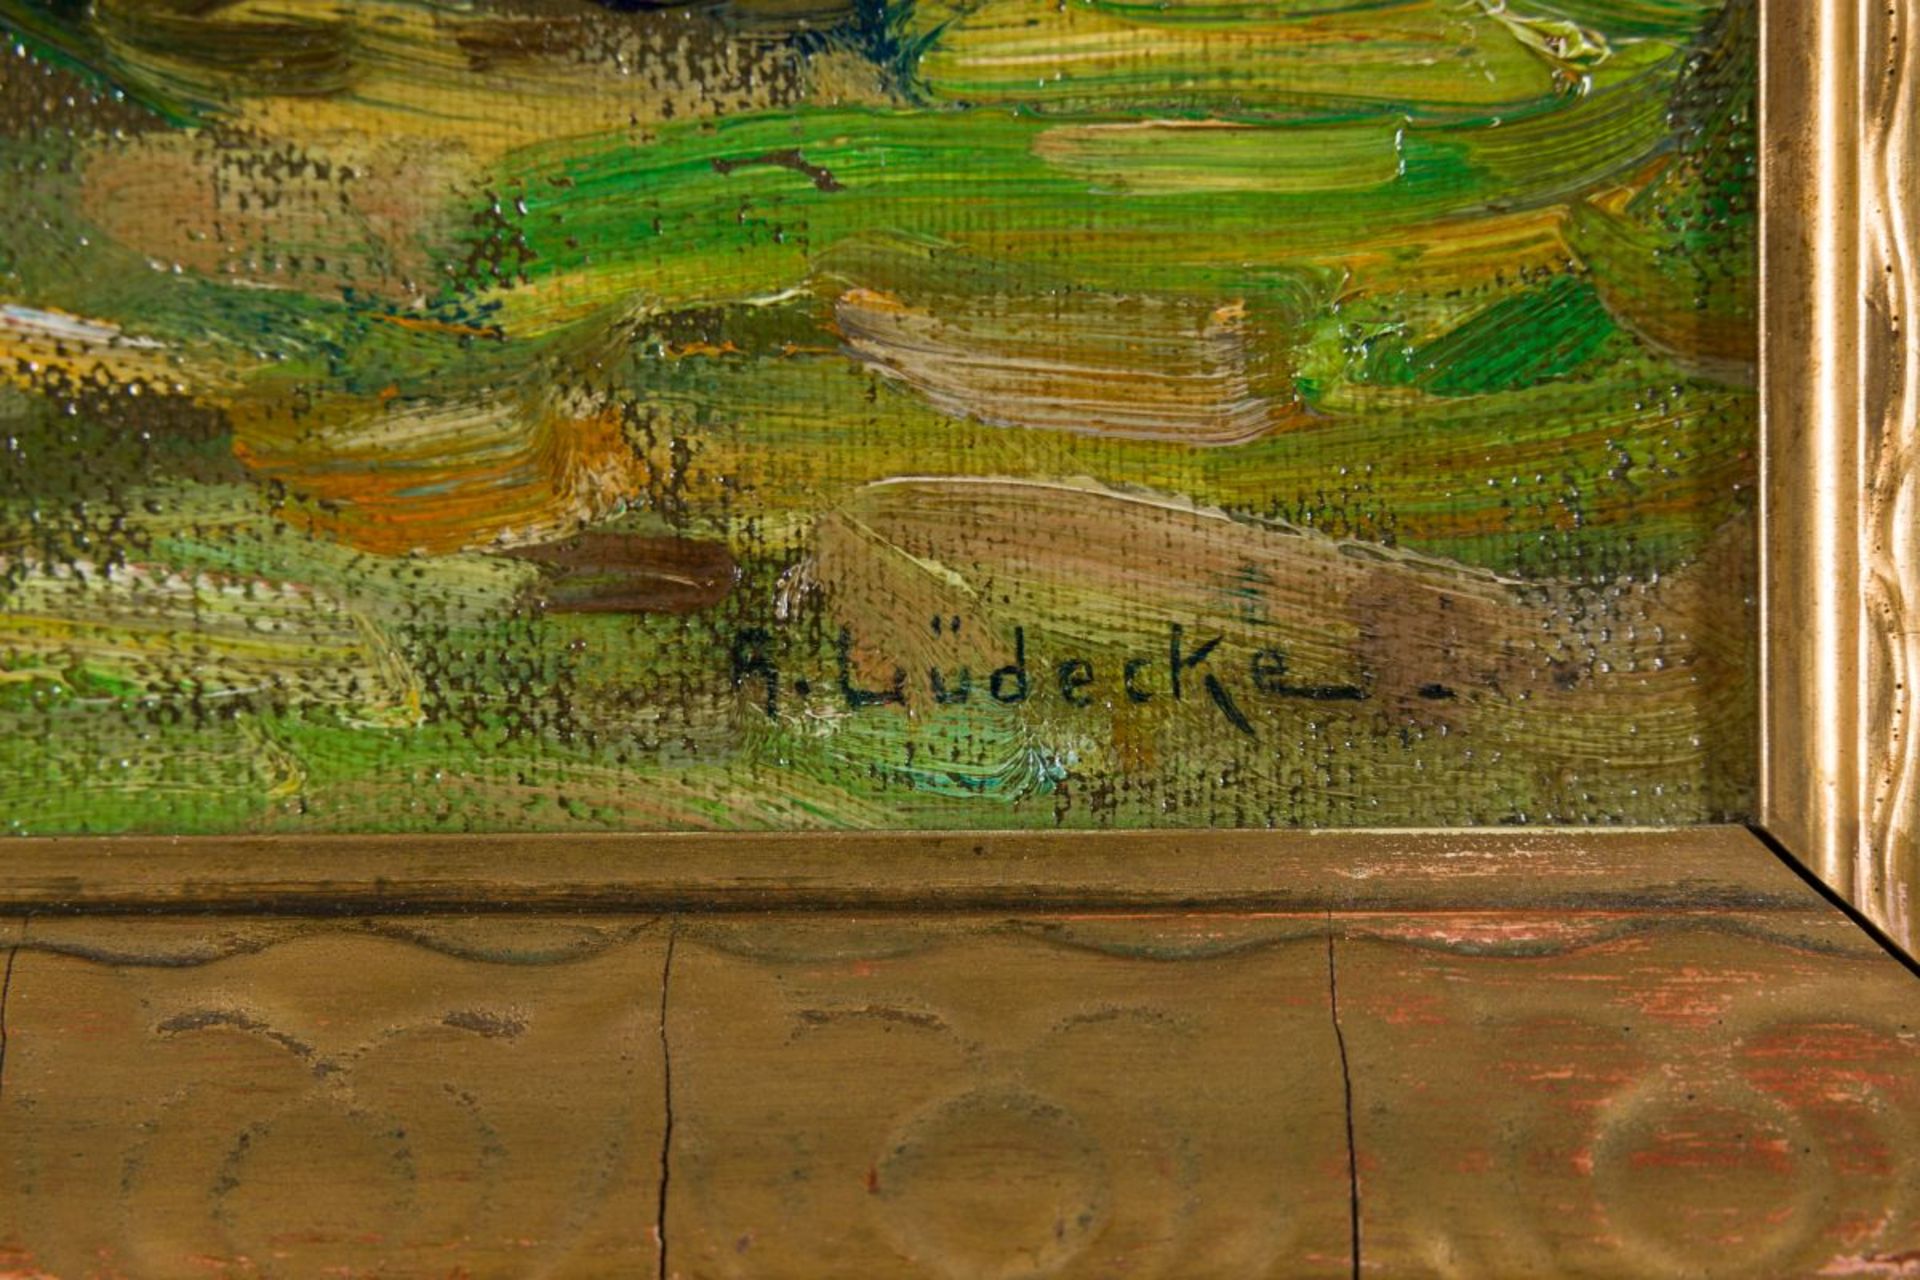 Lüdecke-Cleve, August - Bild 3 aus 4